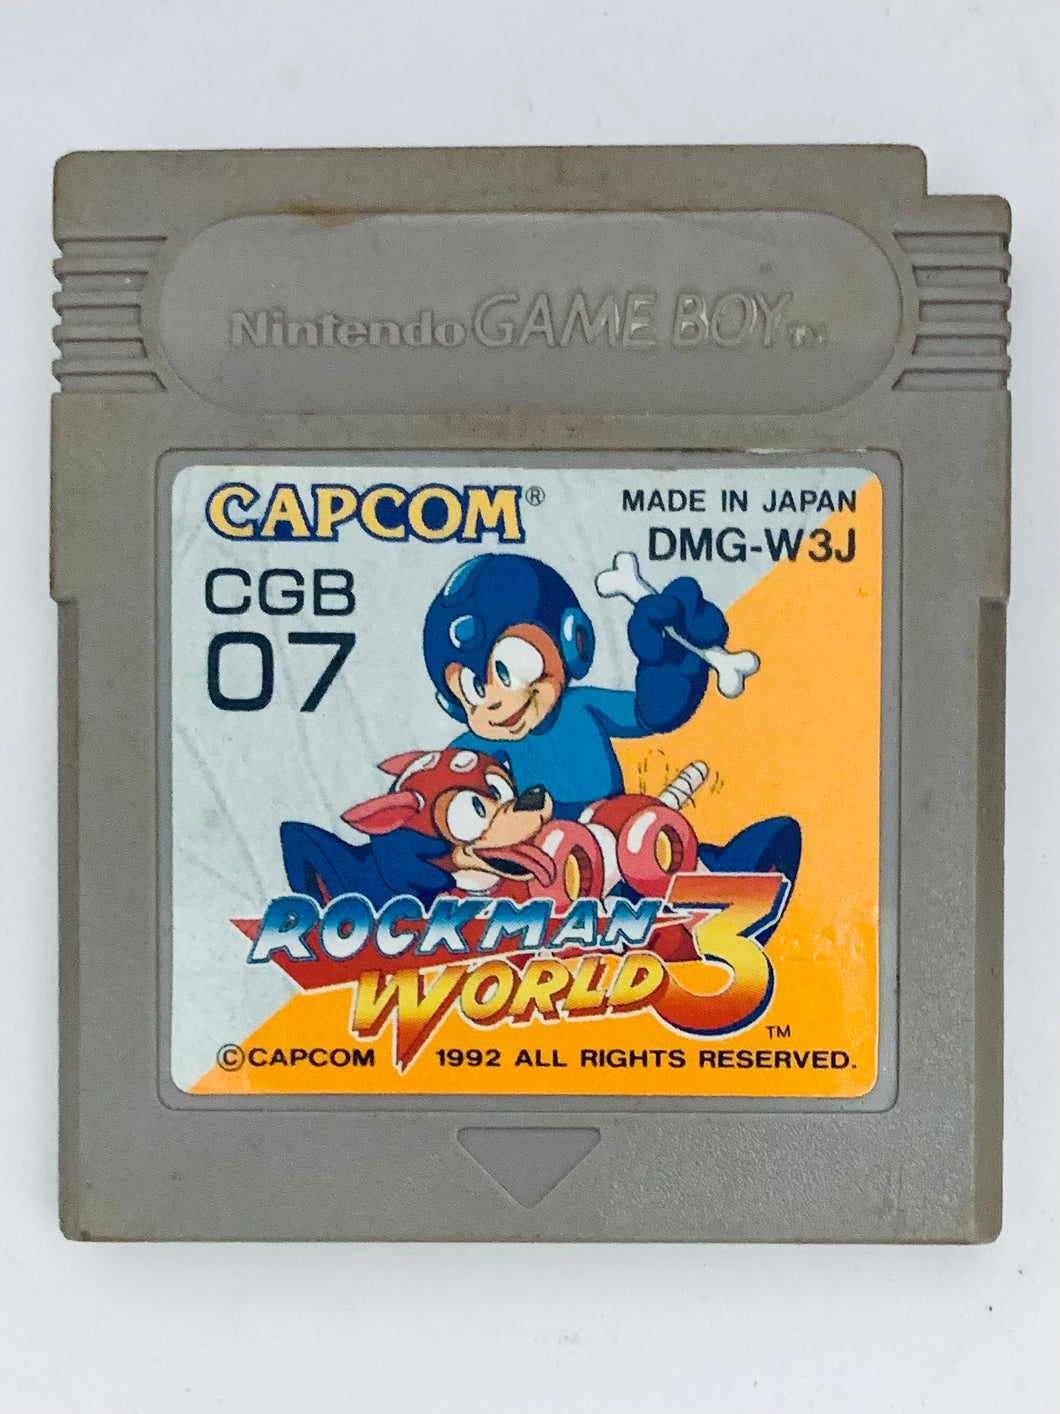 RockMan World 3 - GameBoy - Game Boy - Pocket - GBC - GBA - JP - Cartridge (DMG-W3J)